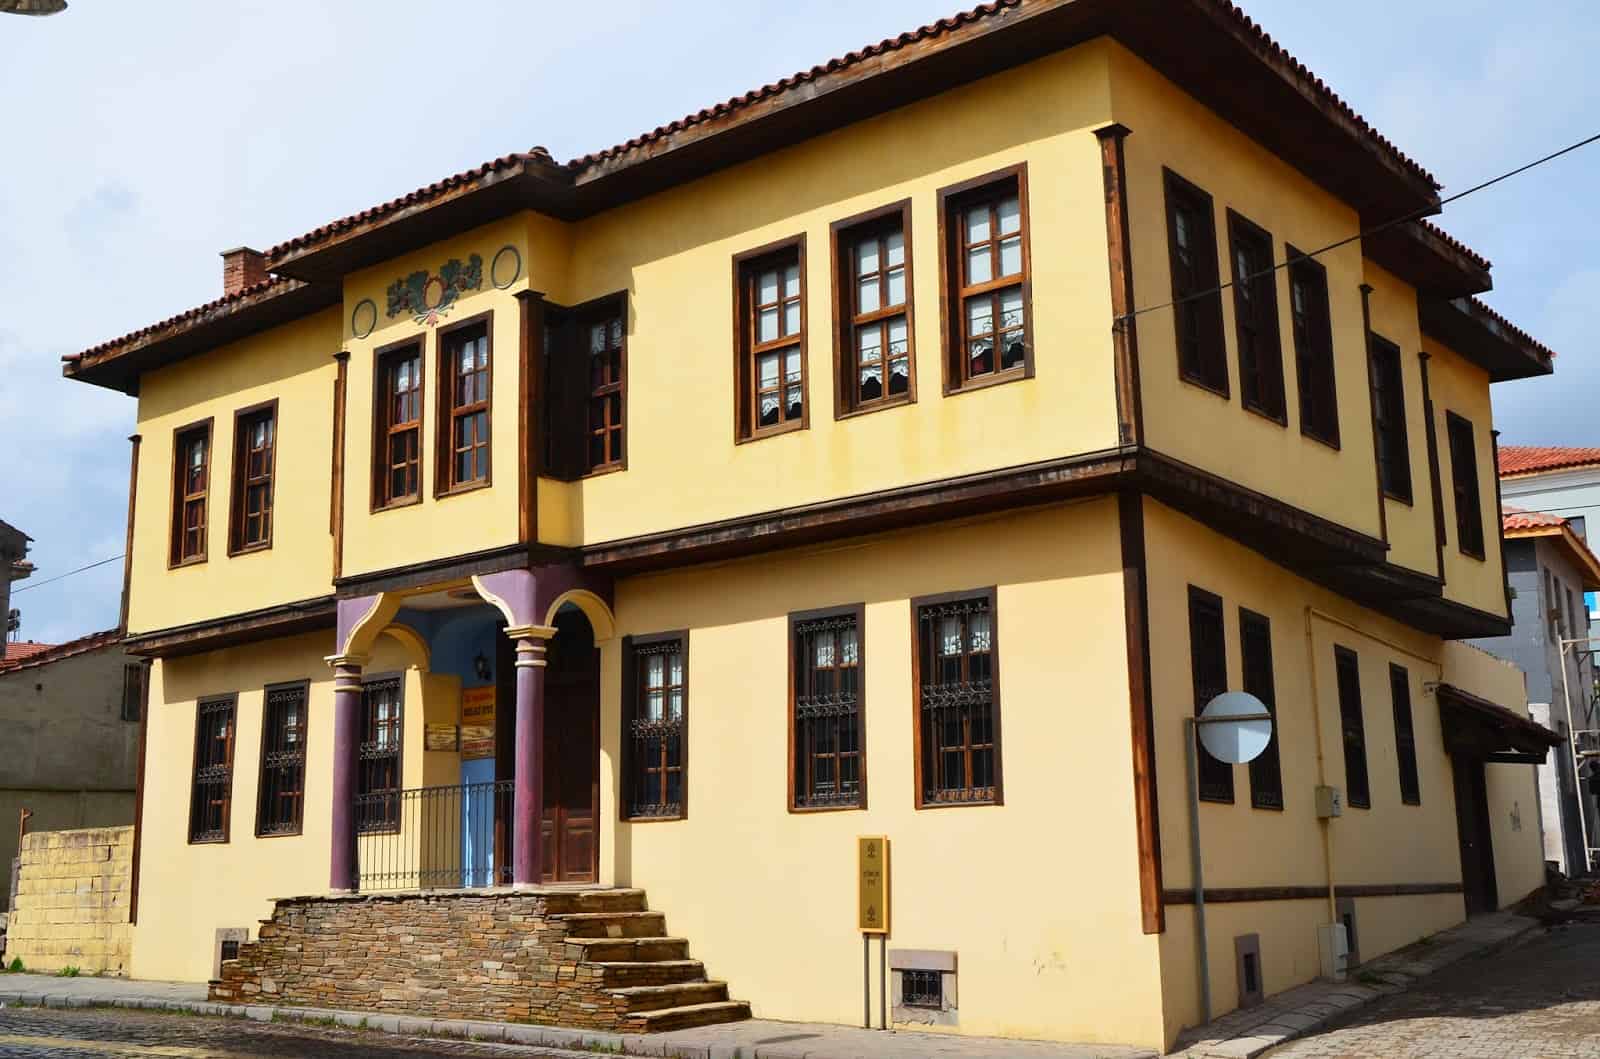 Latife Hanım House in Uşak, Turkey